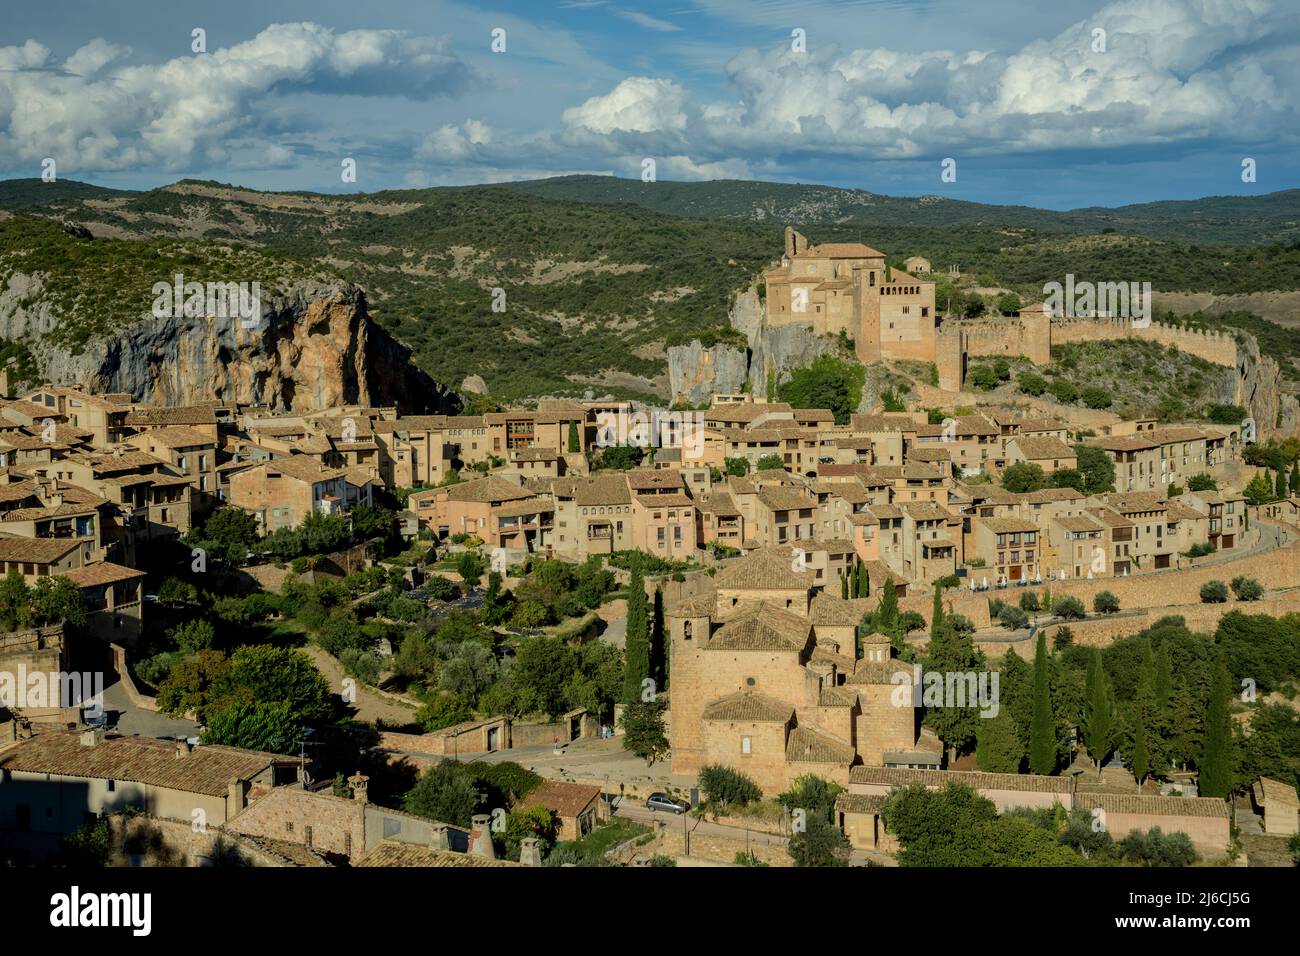 Le vieux village d'Alquézar, Huesca, dans le Parc naturel de la Sierra y Cañones de Guara, Espagne. Banque D'Images